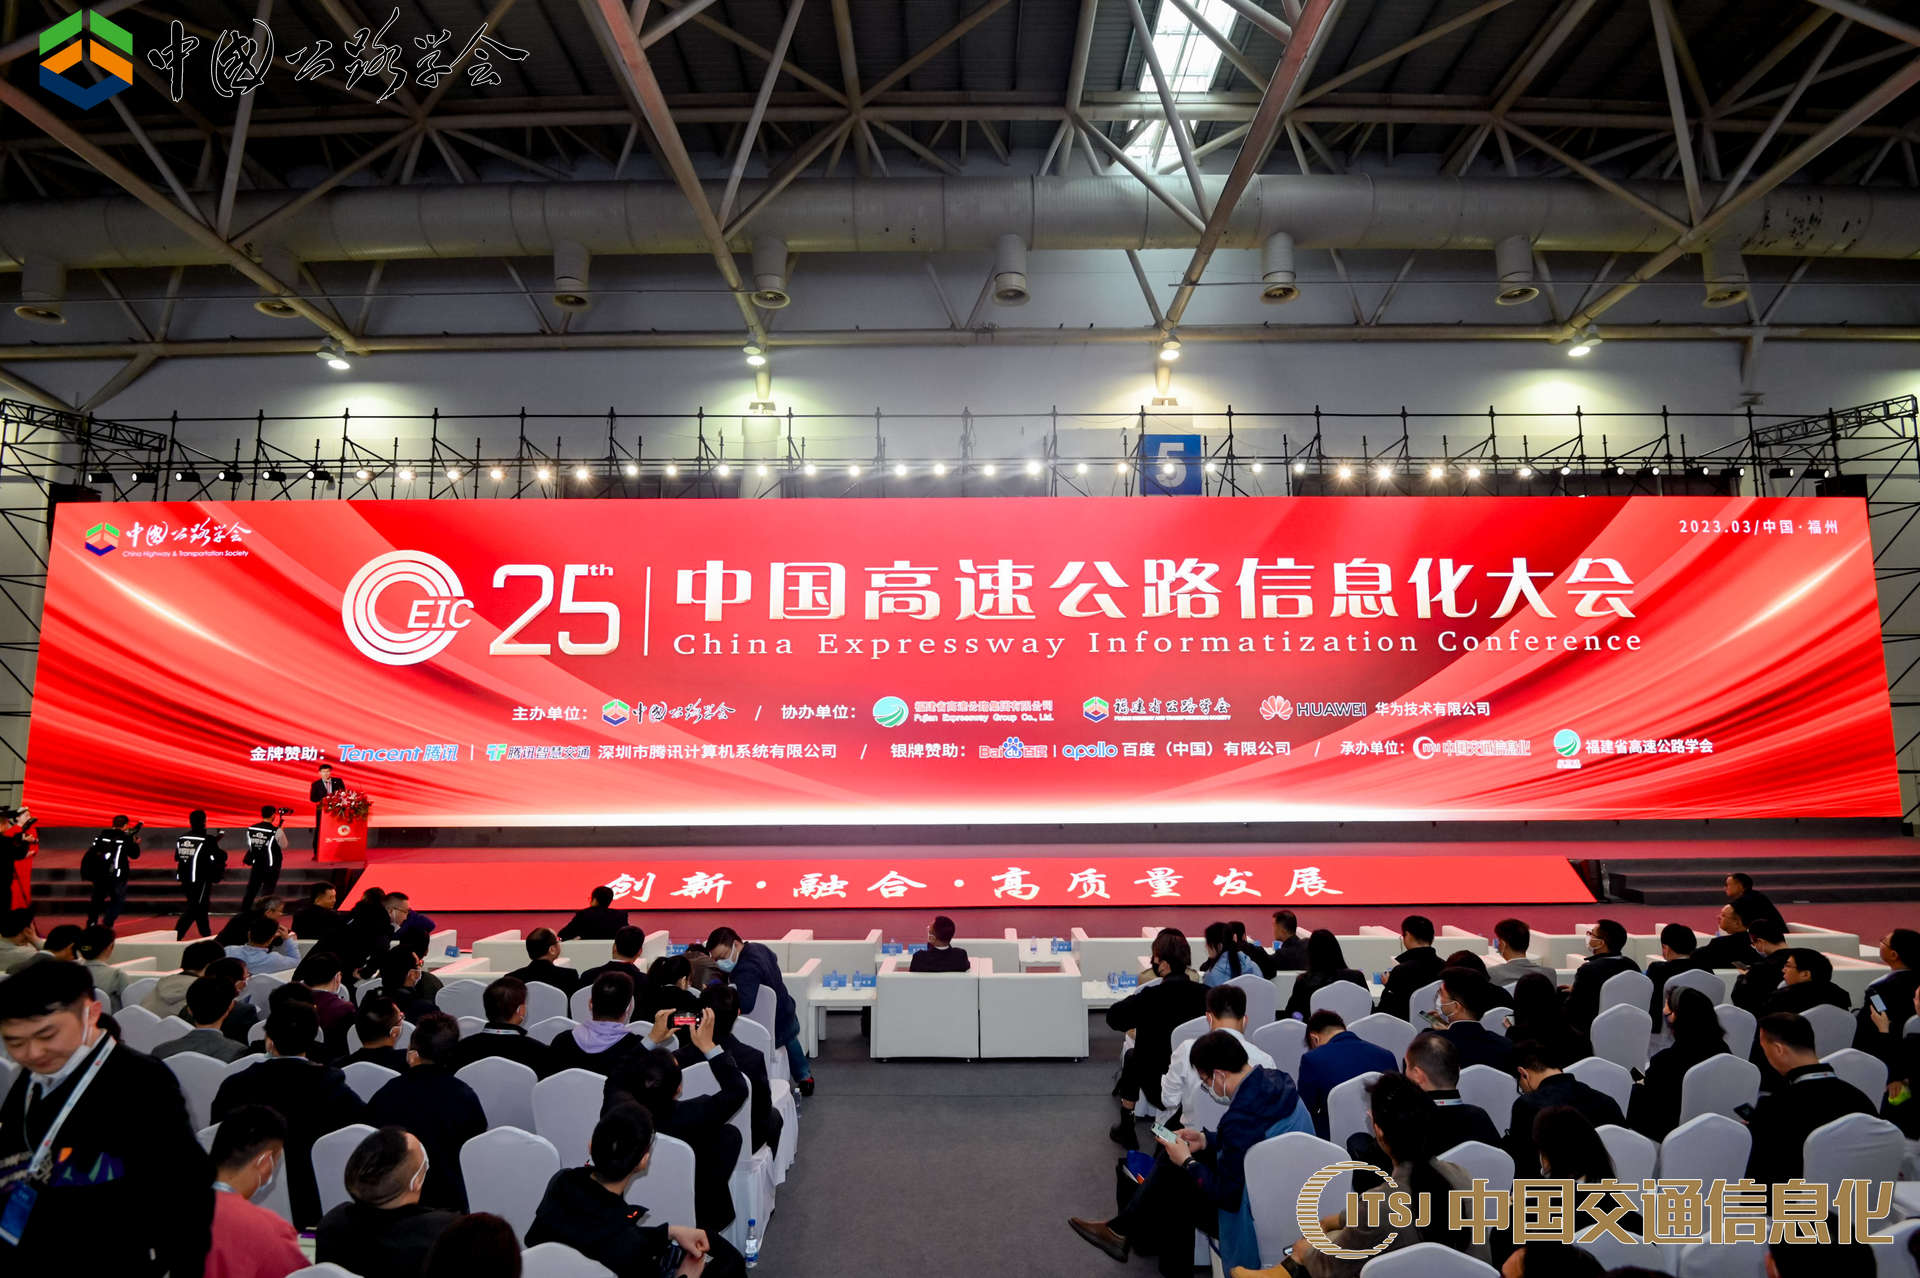 博能动态 | 博能股份出席“第二十五届中国高速公路信息化大会”